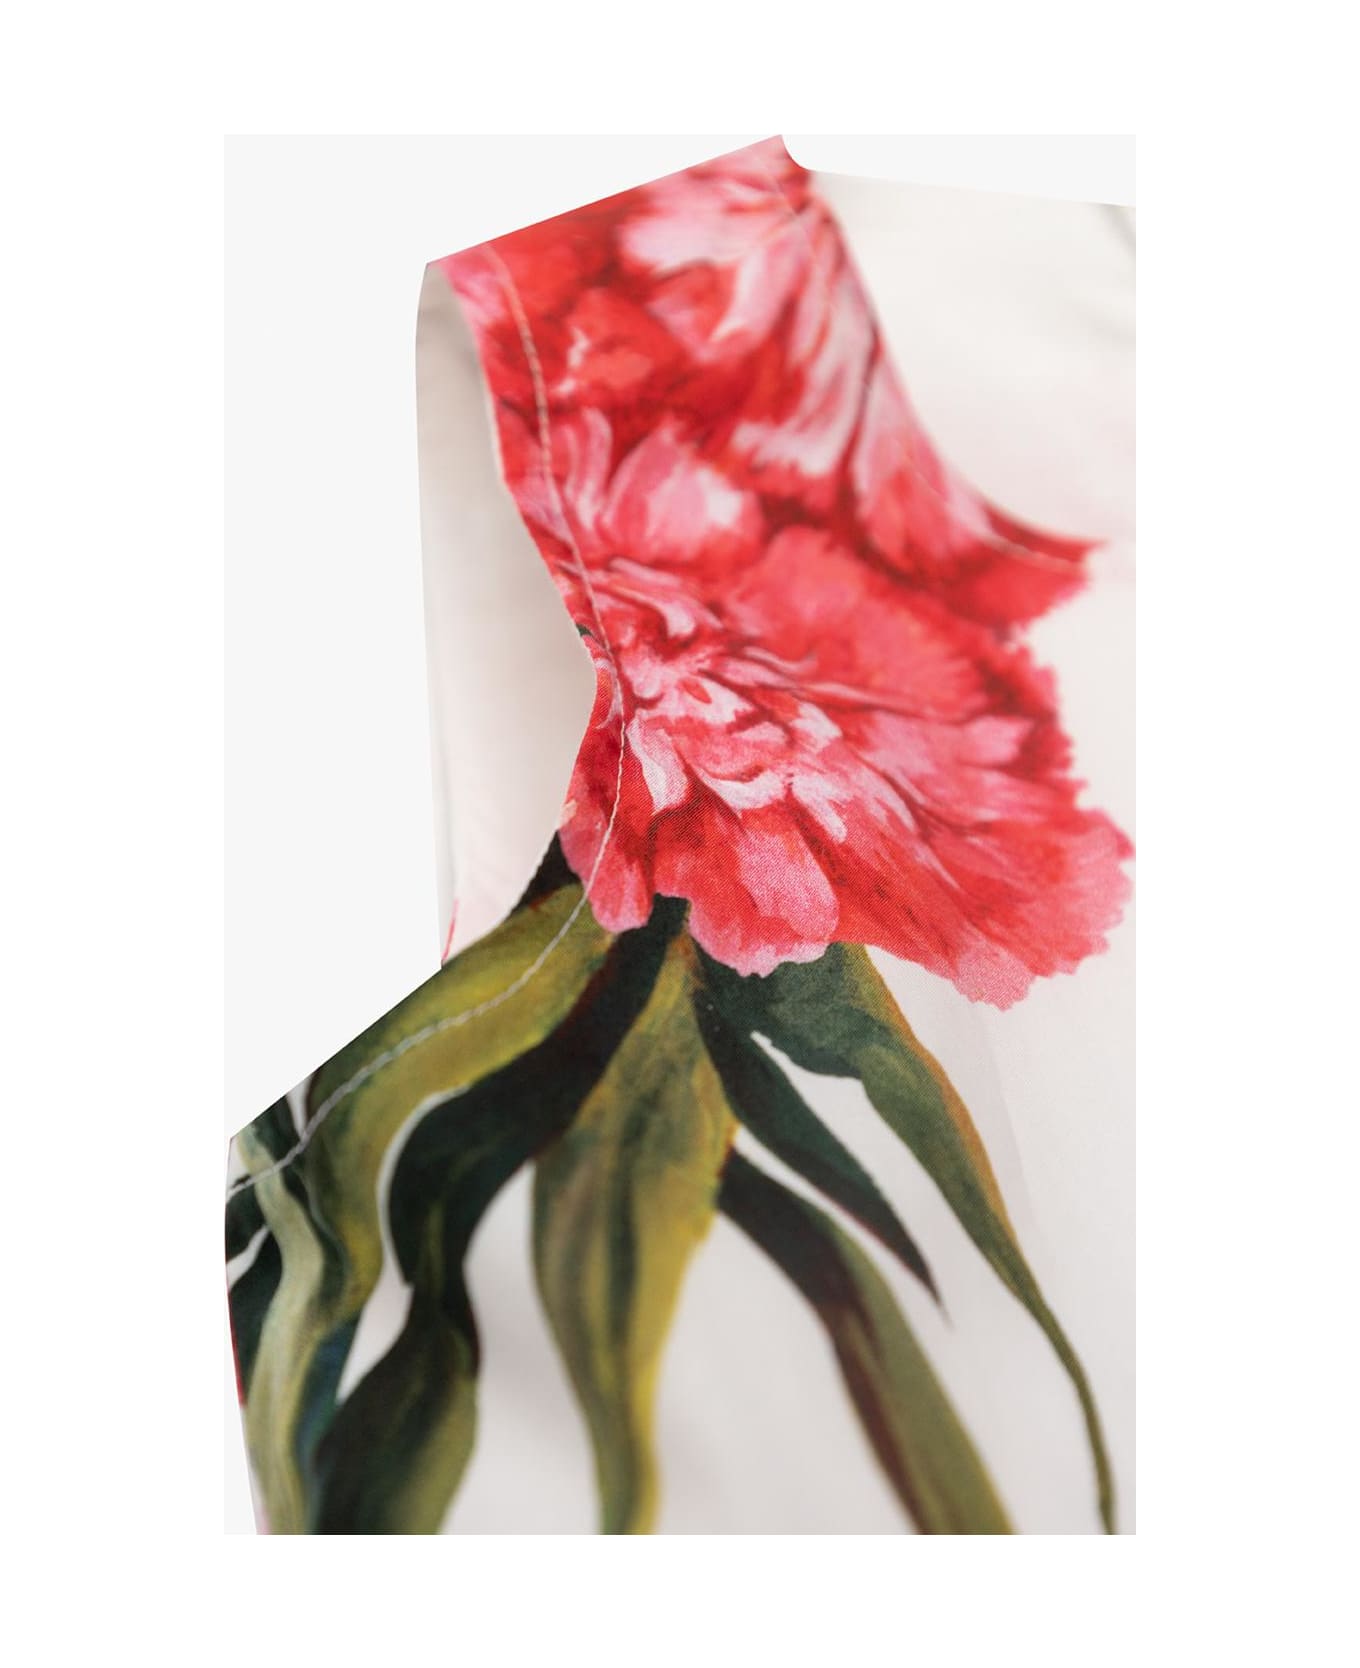 Dolce & Gabbana Kids Floral Dress - NEUTRALS/RED